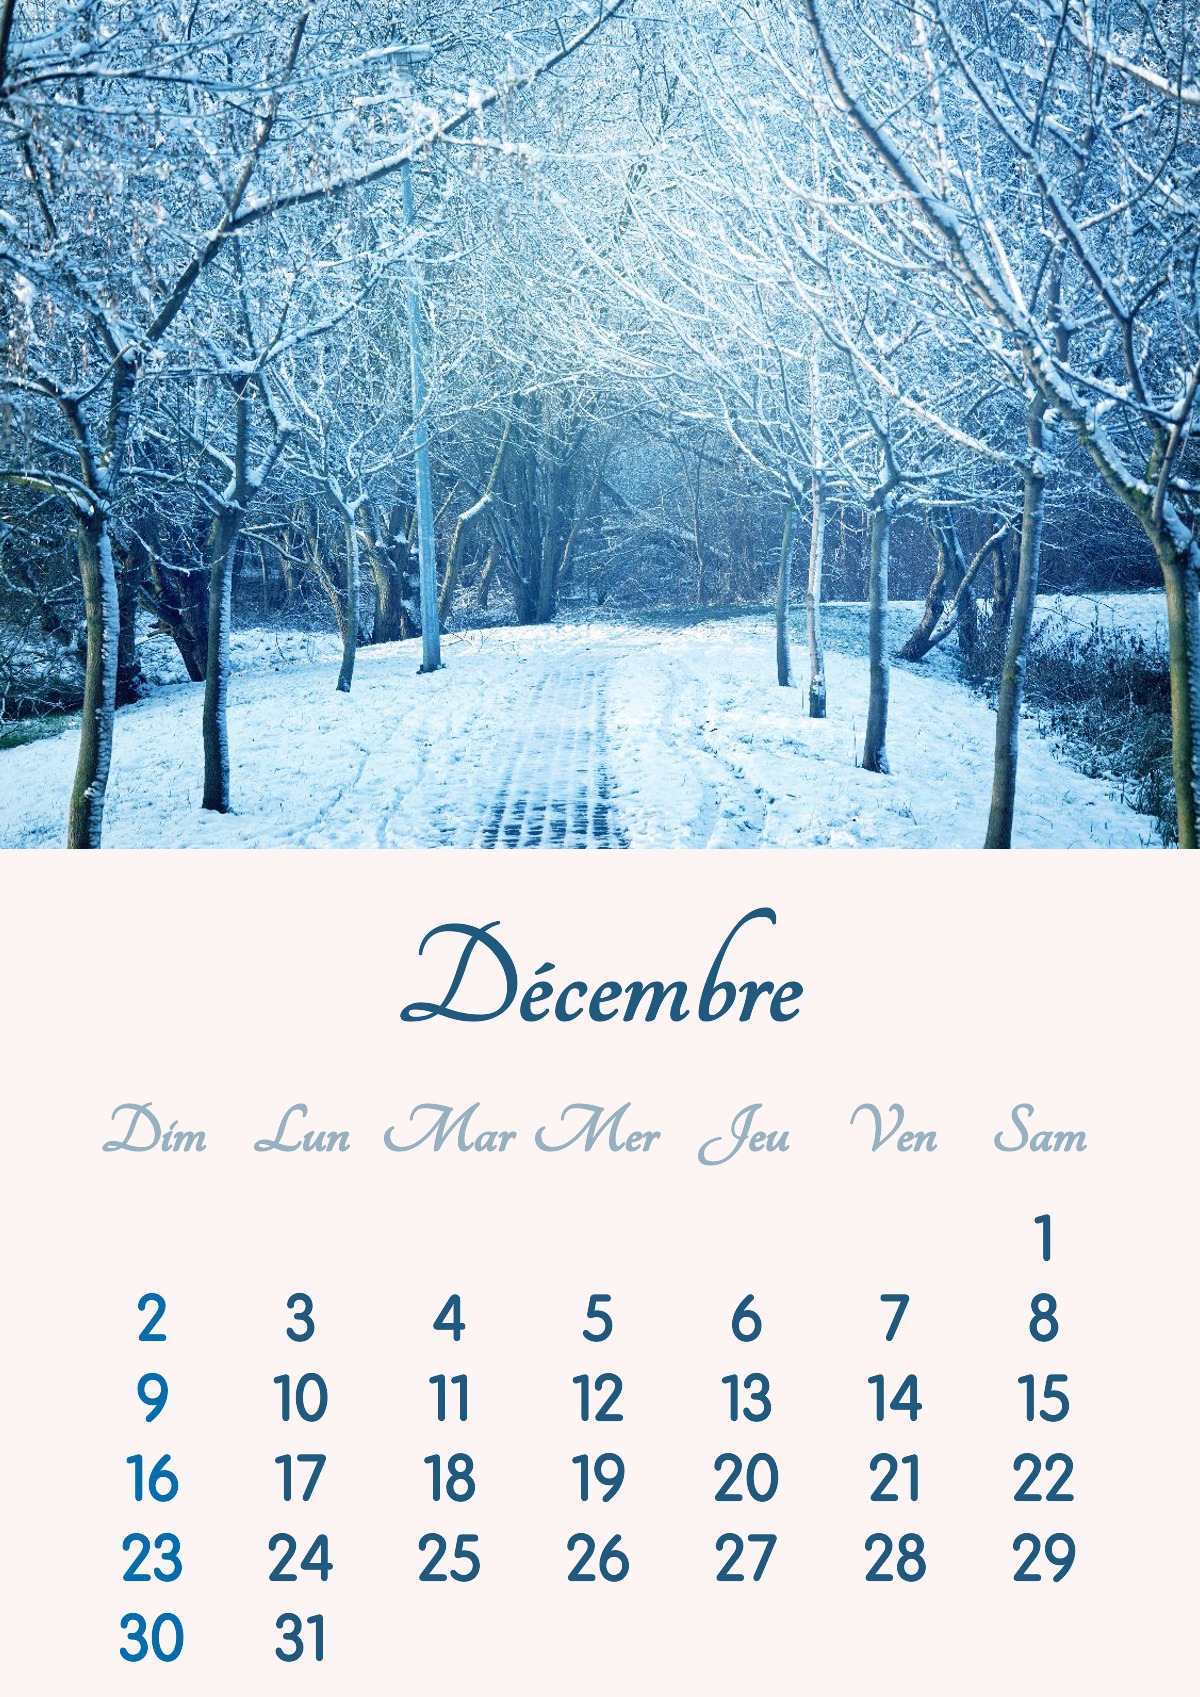 Календарь на декабрь 2018 года для печати формата А4 Фотомонтаж | Pixiz